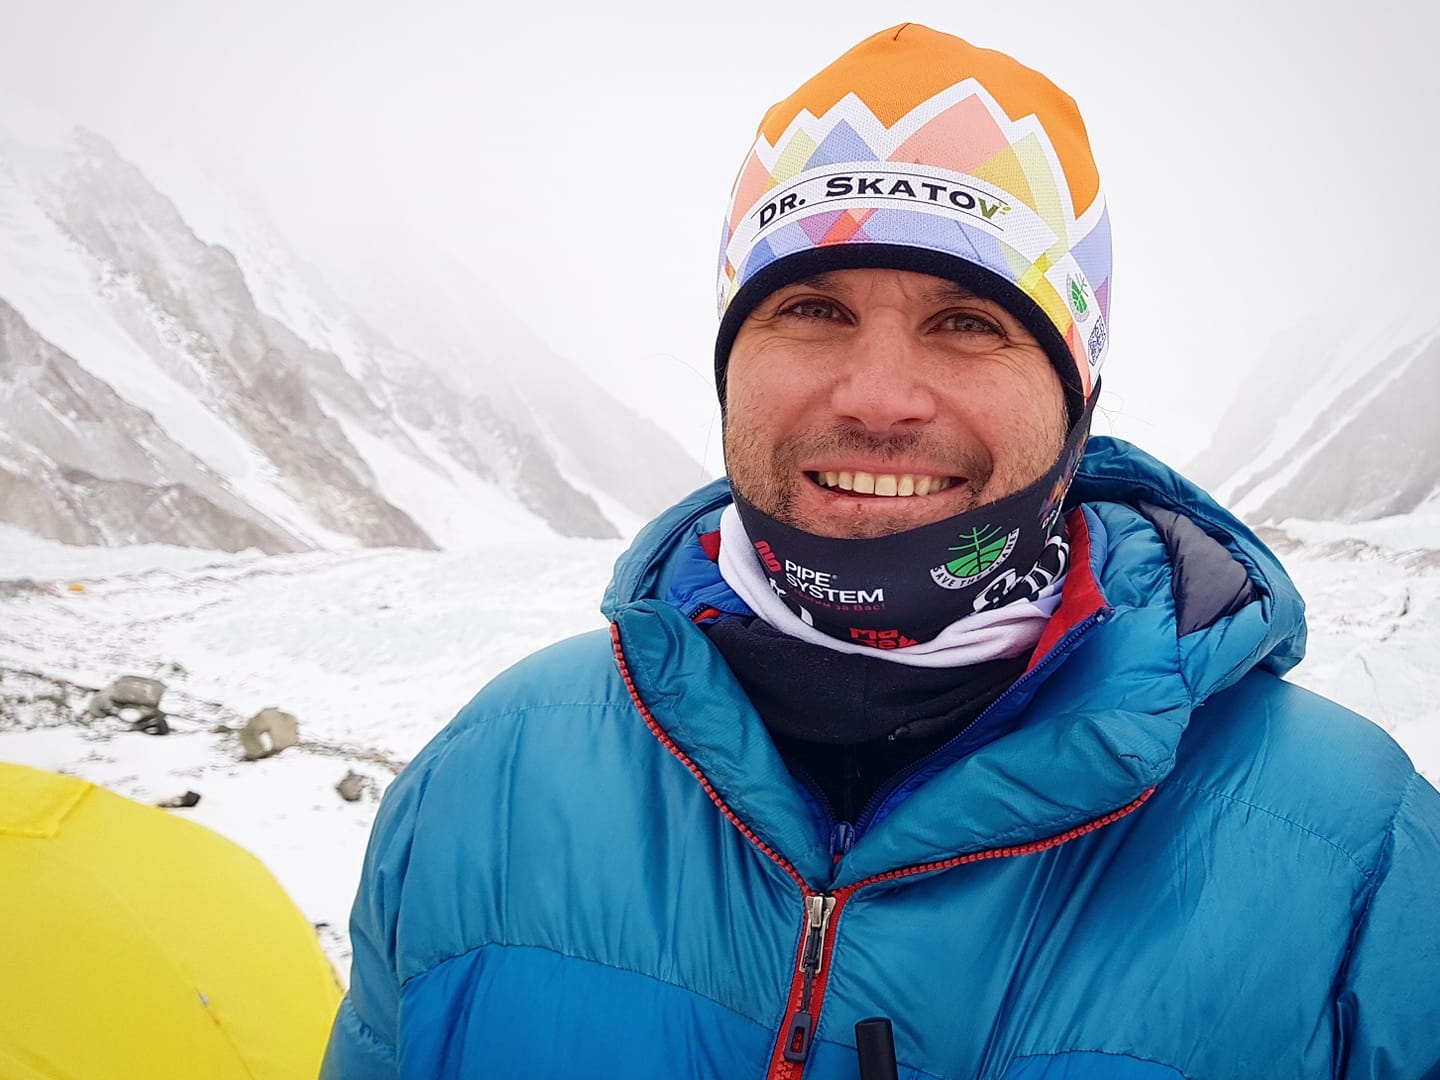 Българският алпинист Атанас Скатов в момента е на базовия лагер